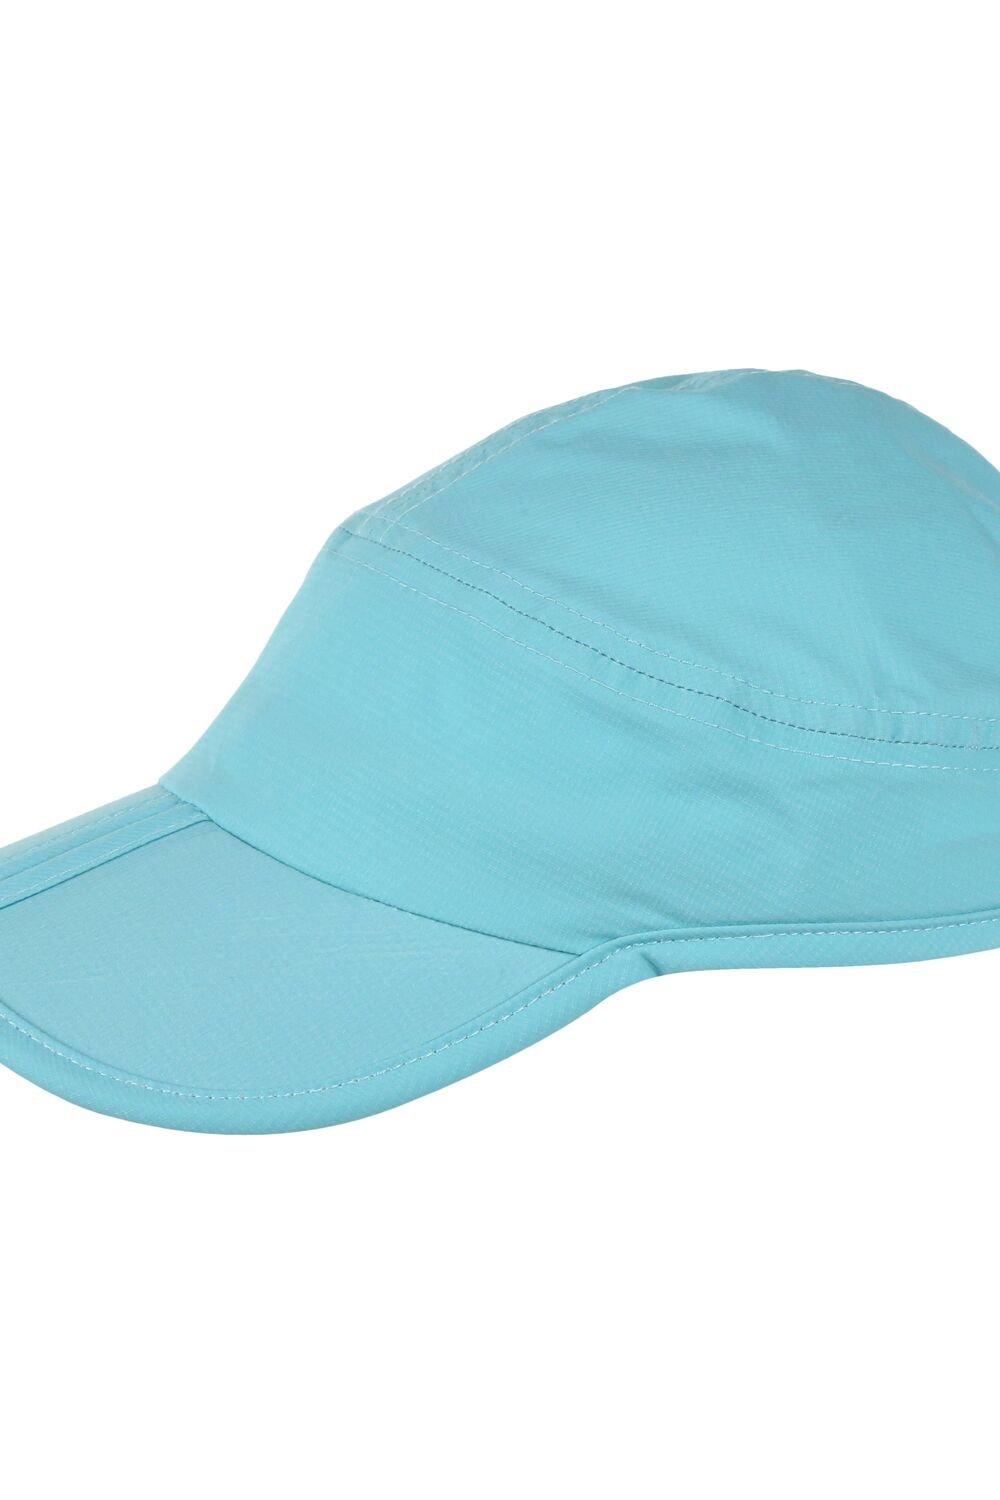 «Складная» кепка Ripstop с козырьком Regatta, синий шапка для бани фуражка капитан